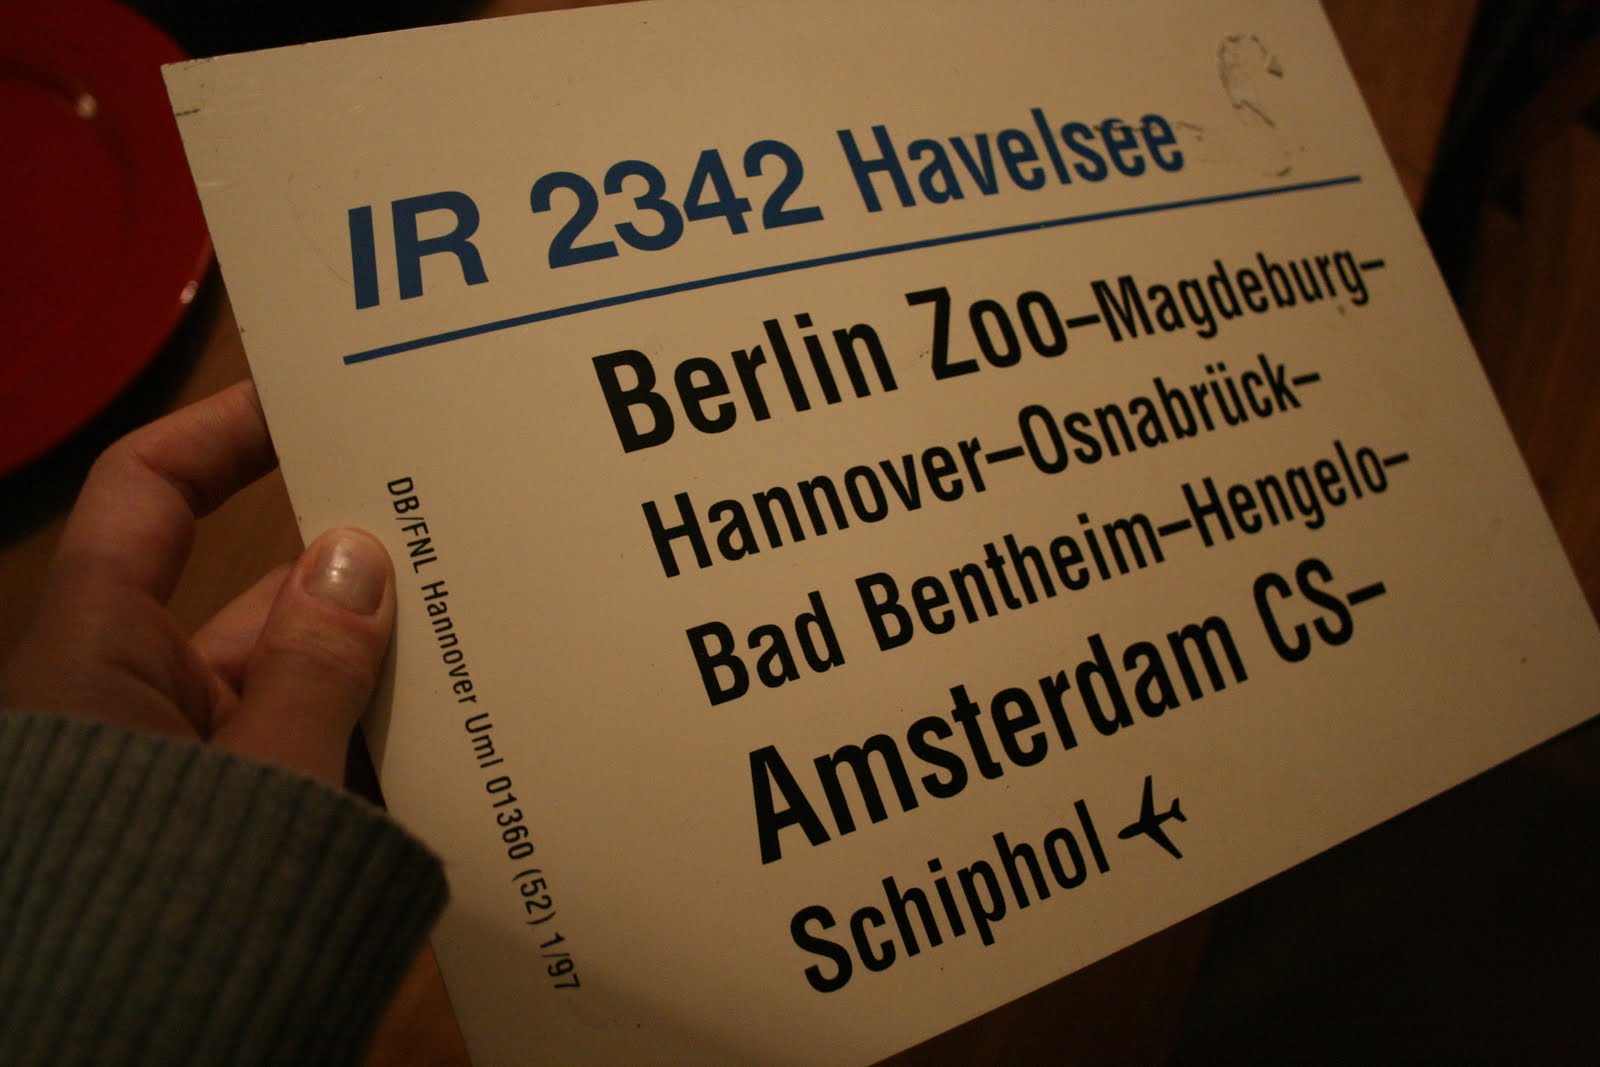 IR 2342 Havelsee by Ulrike Nagel